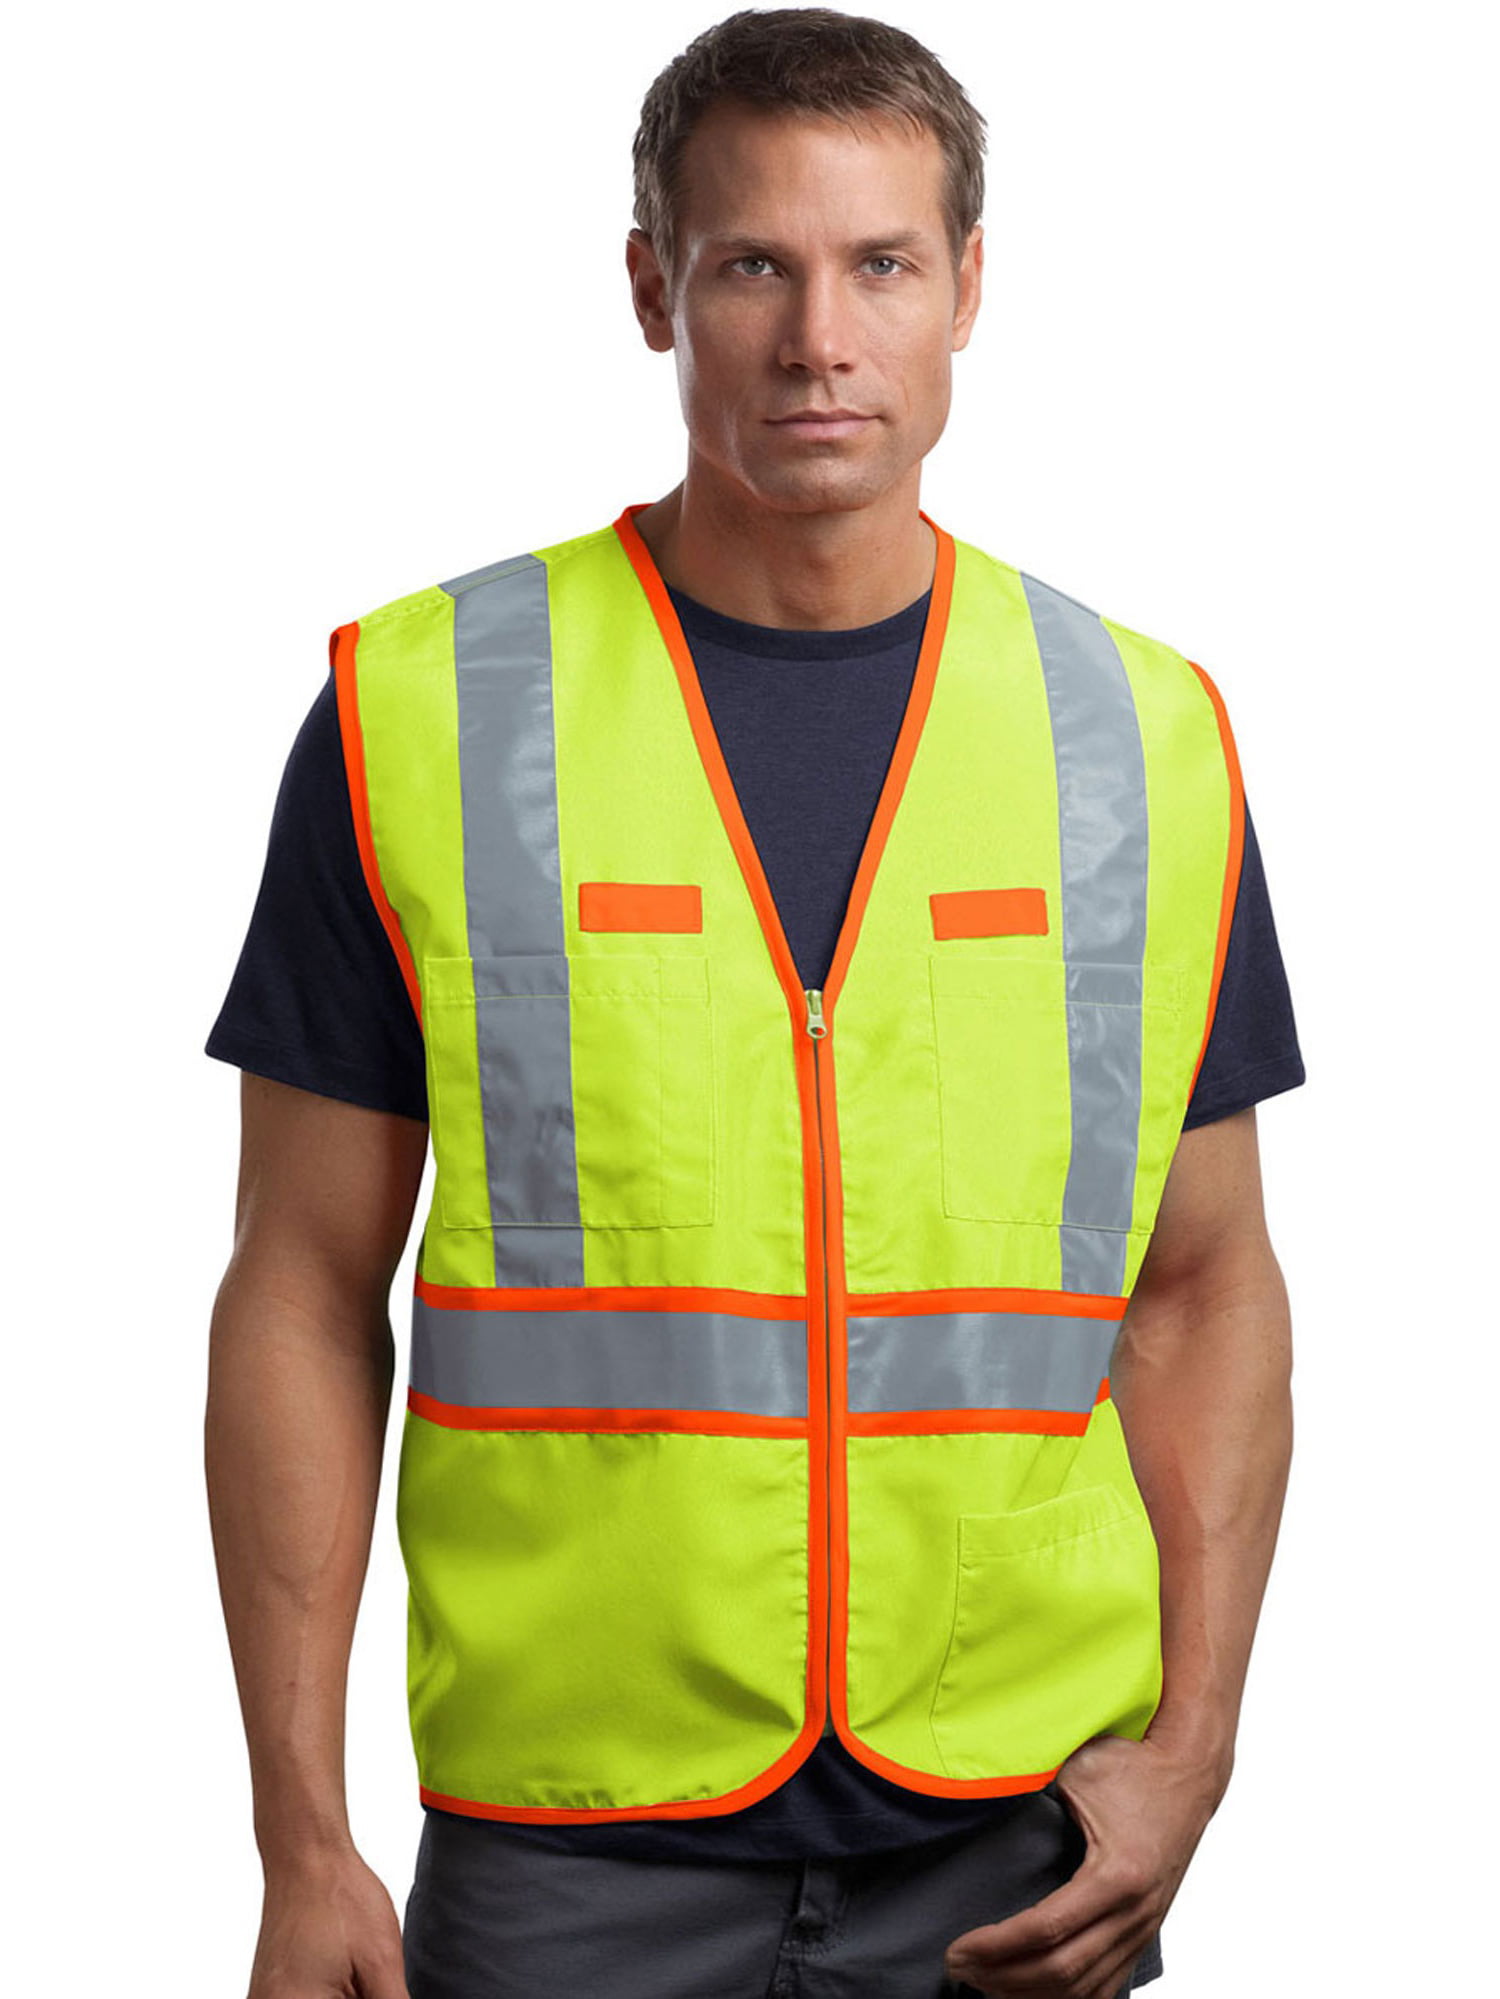 Cornerstone Men's Dual-Color Safety Vest - Walmart.com